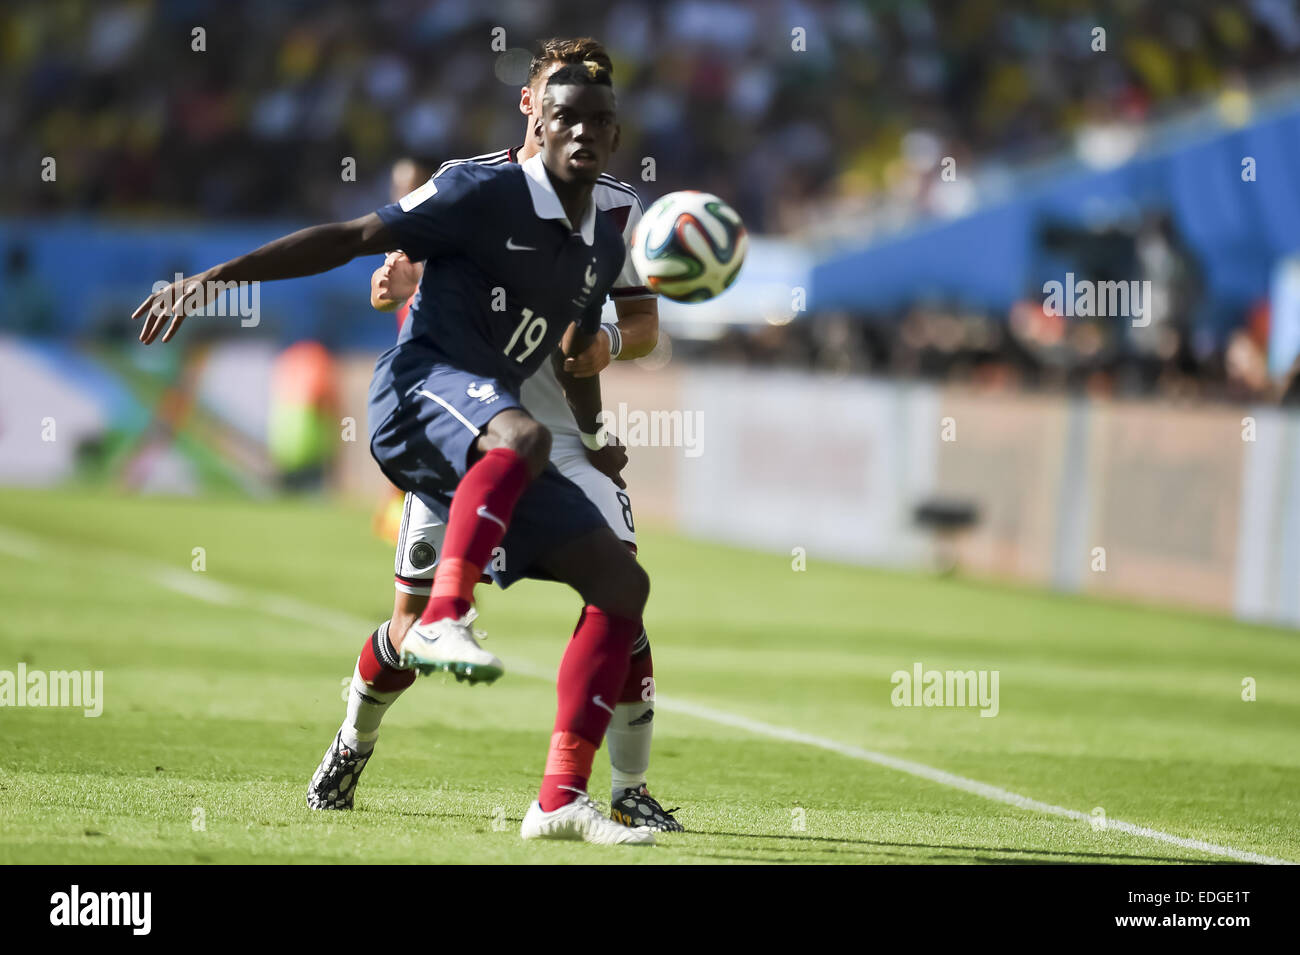 2014 FIFA World Cup - Quarter Finals, France (0) v (1) Germany, held at Estádio Jornalista Mário Filho (Estádio Maracanã)  Where: Rio de Janeiro, Brazil When: 04 Jul 2014 Stock Photo